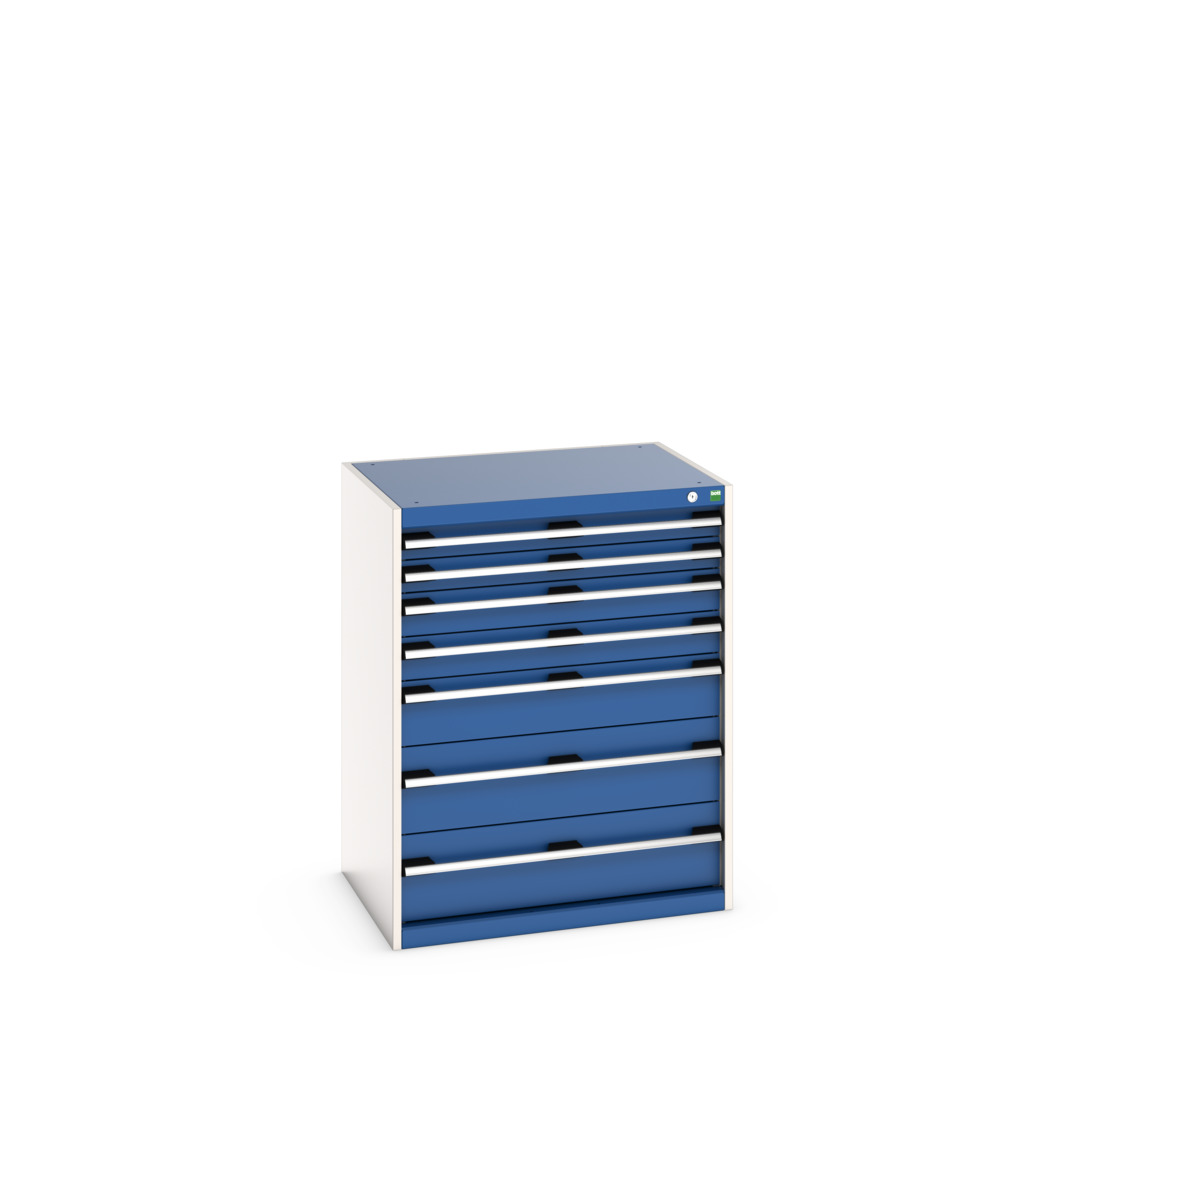 40020054.11V - cubio drawer cabinet